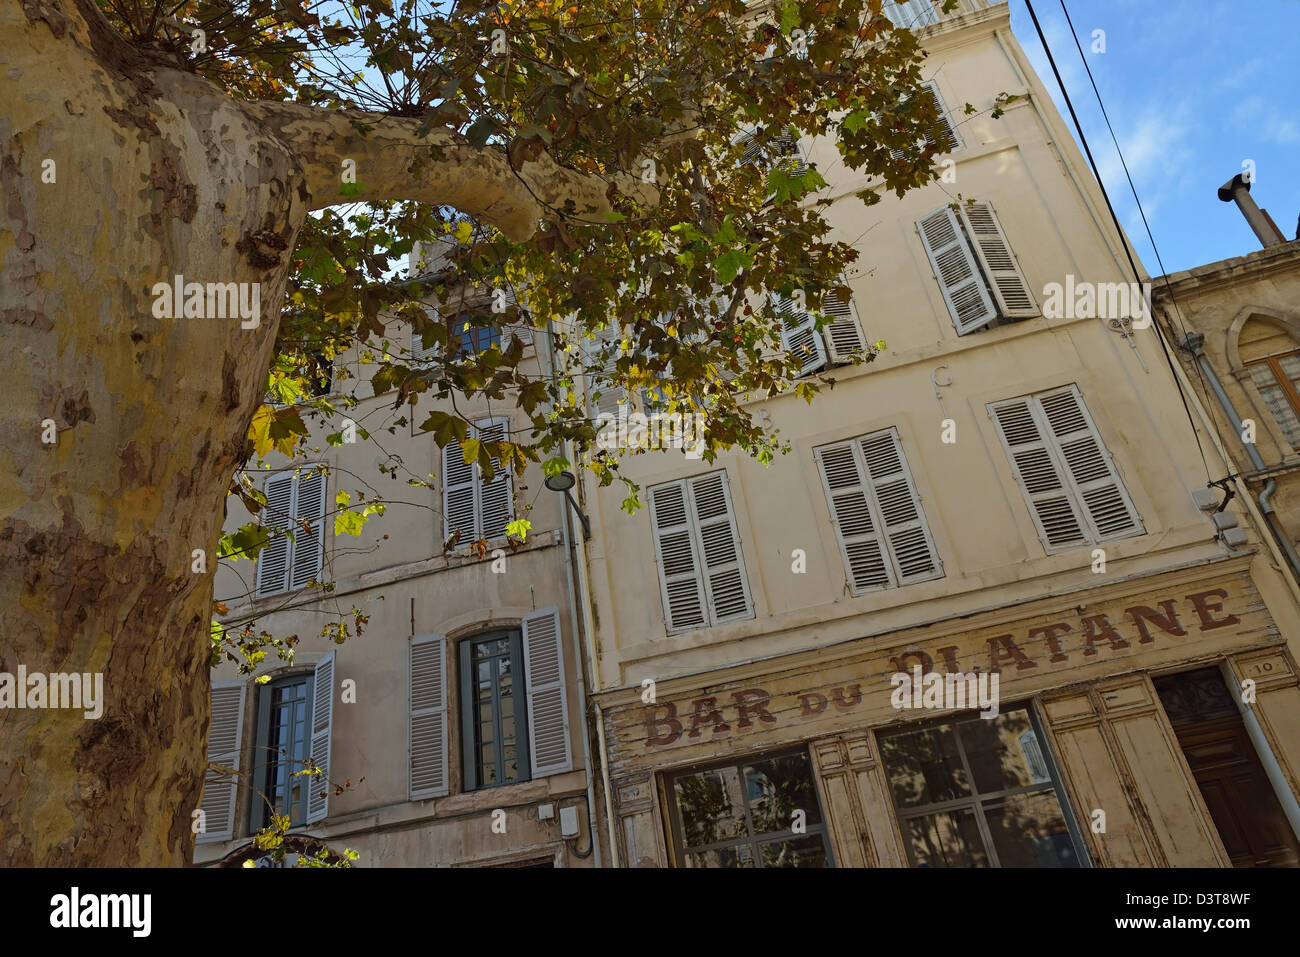 Altmodische französischen Café / bar Fassade im Panier Bezirk, Marseille, Frankreich Stockfoto